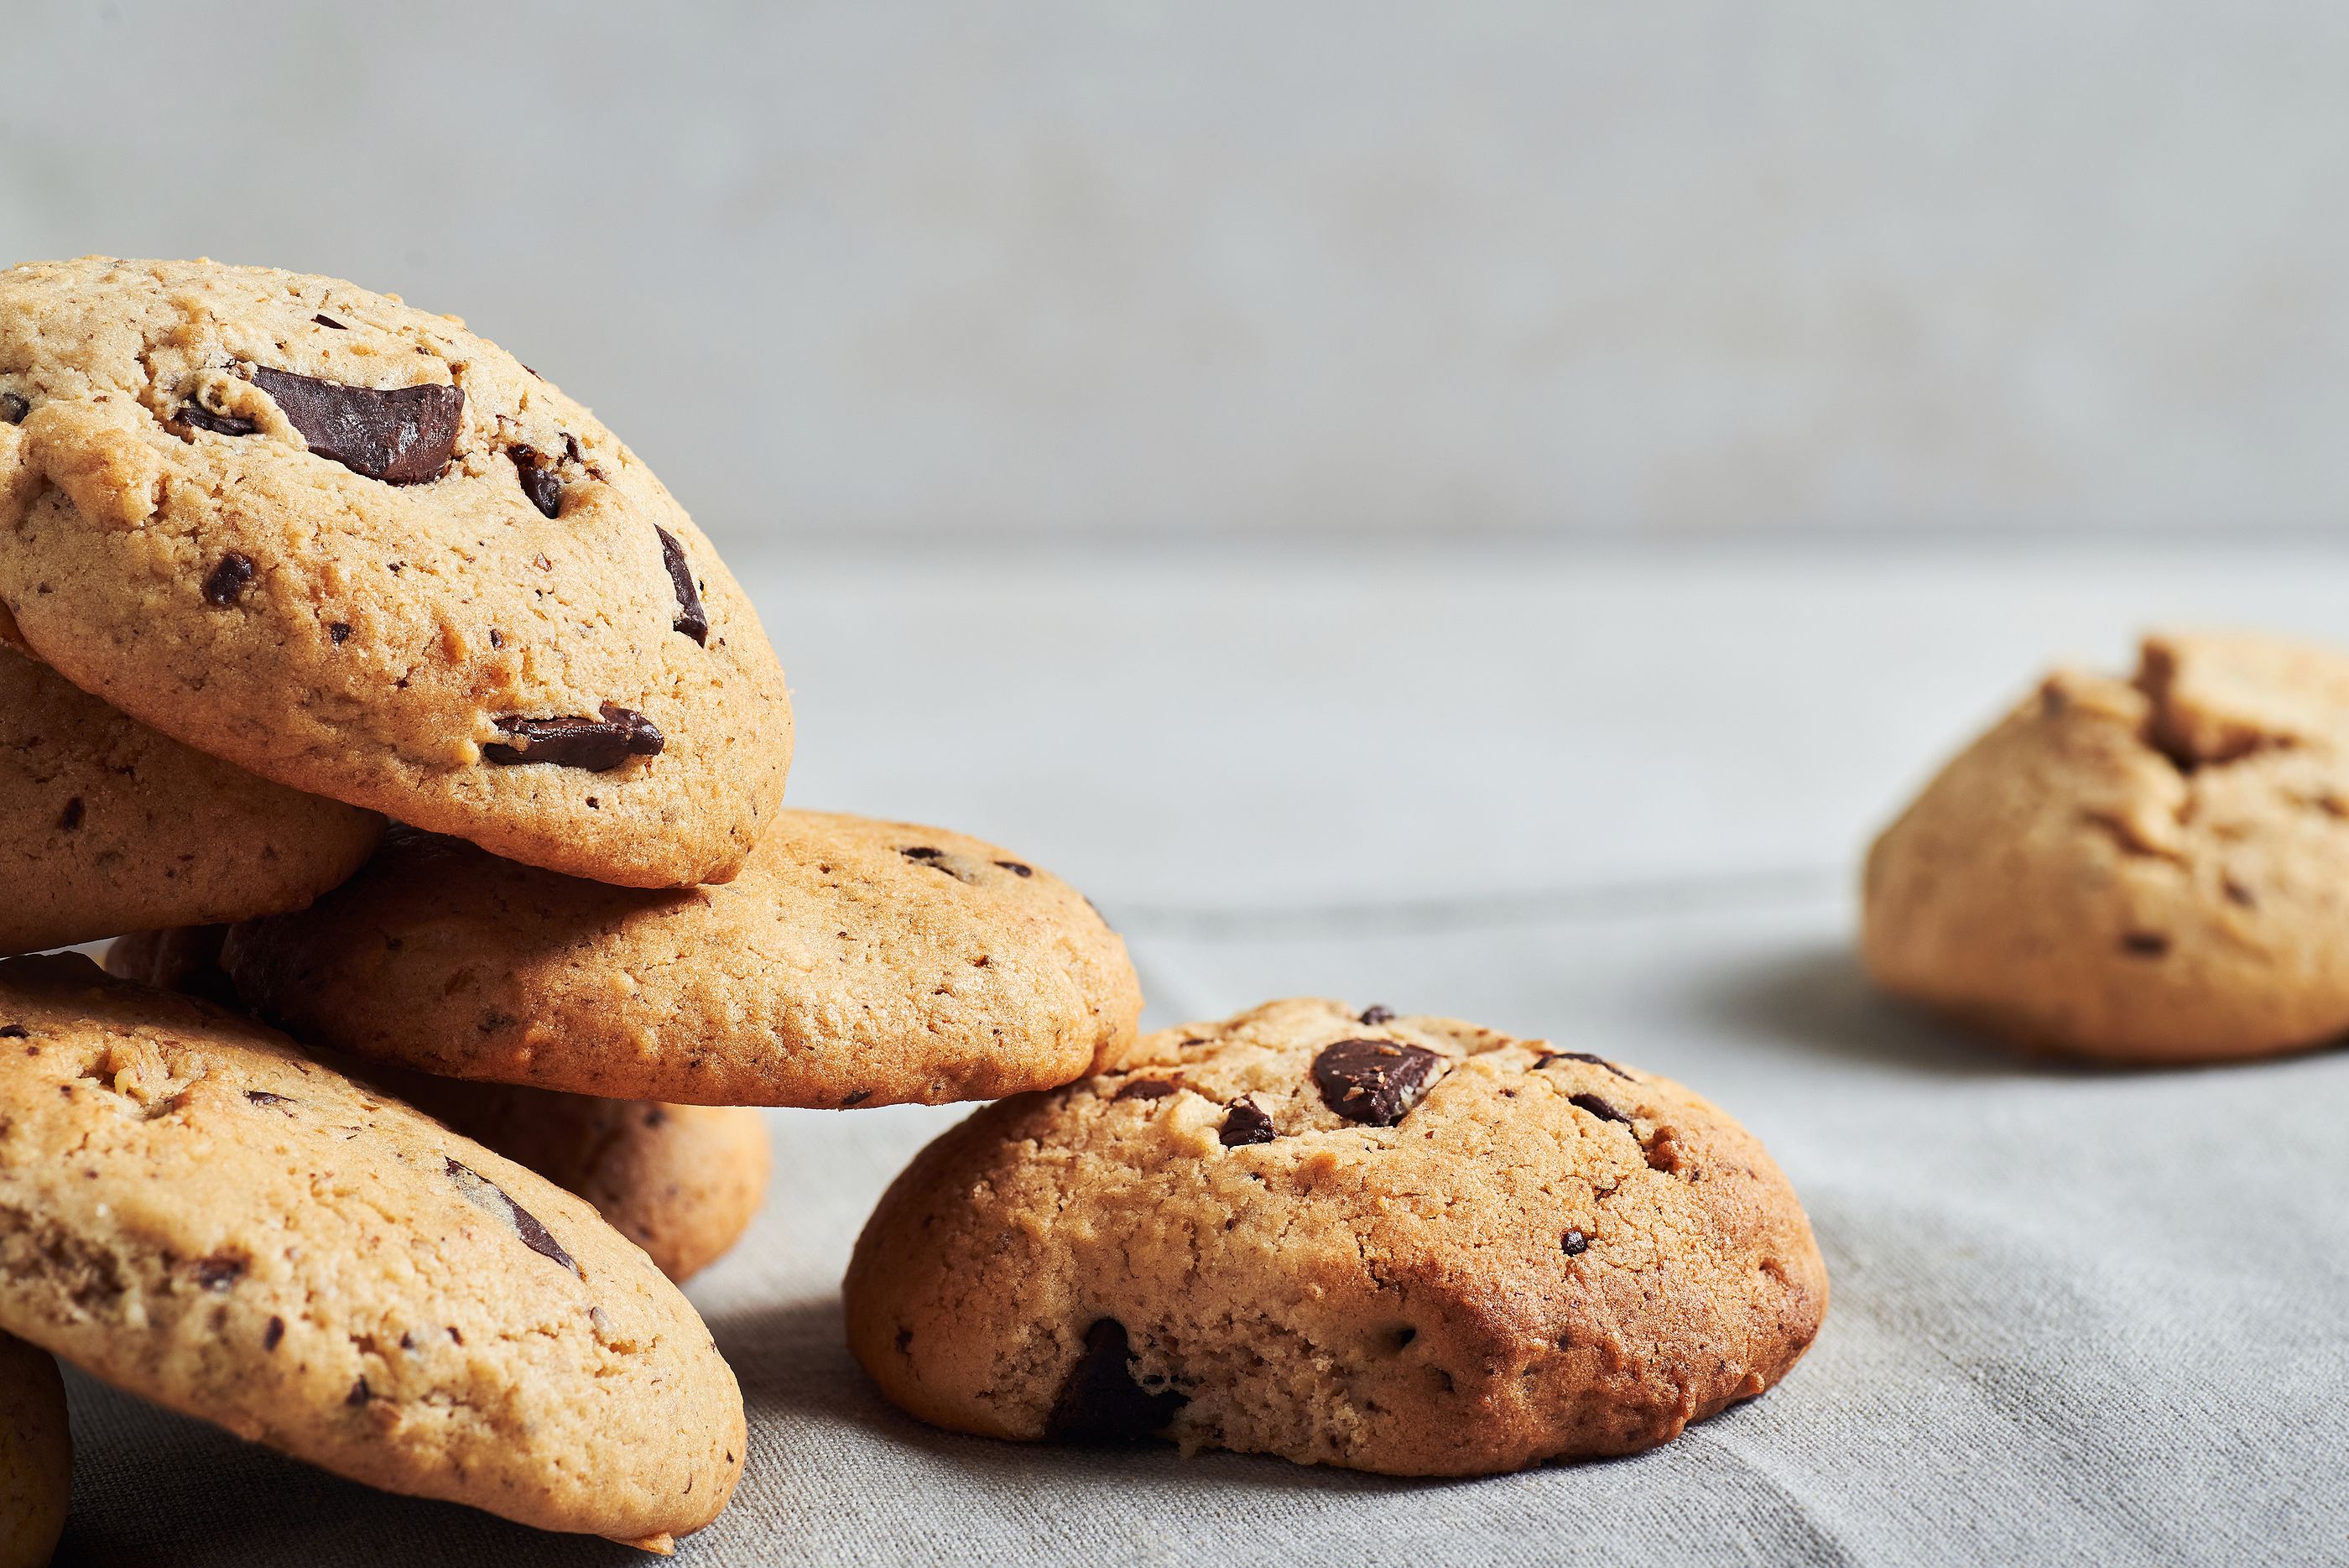 Alerta alimentaria: retiran un lote de galletas con chocolate por contener burundanga y atropina. Foto: Bigstock